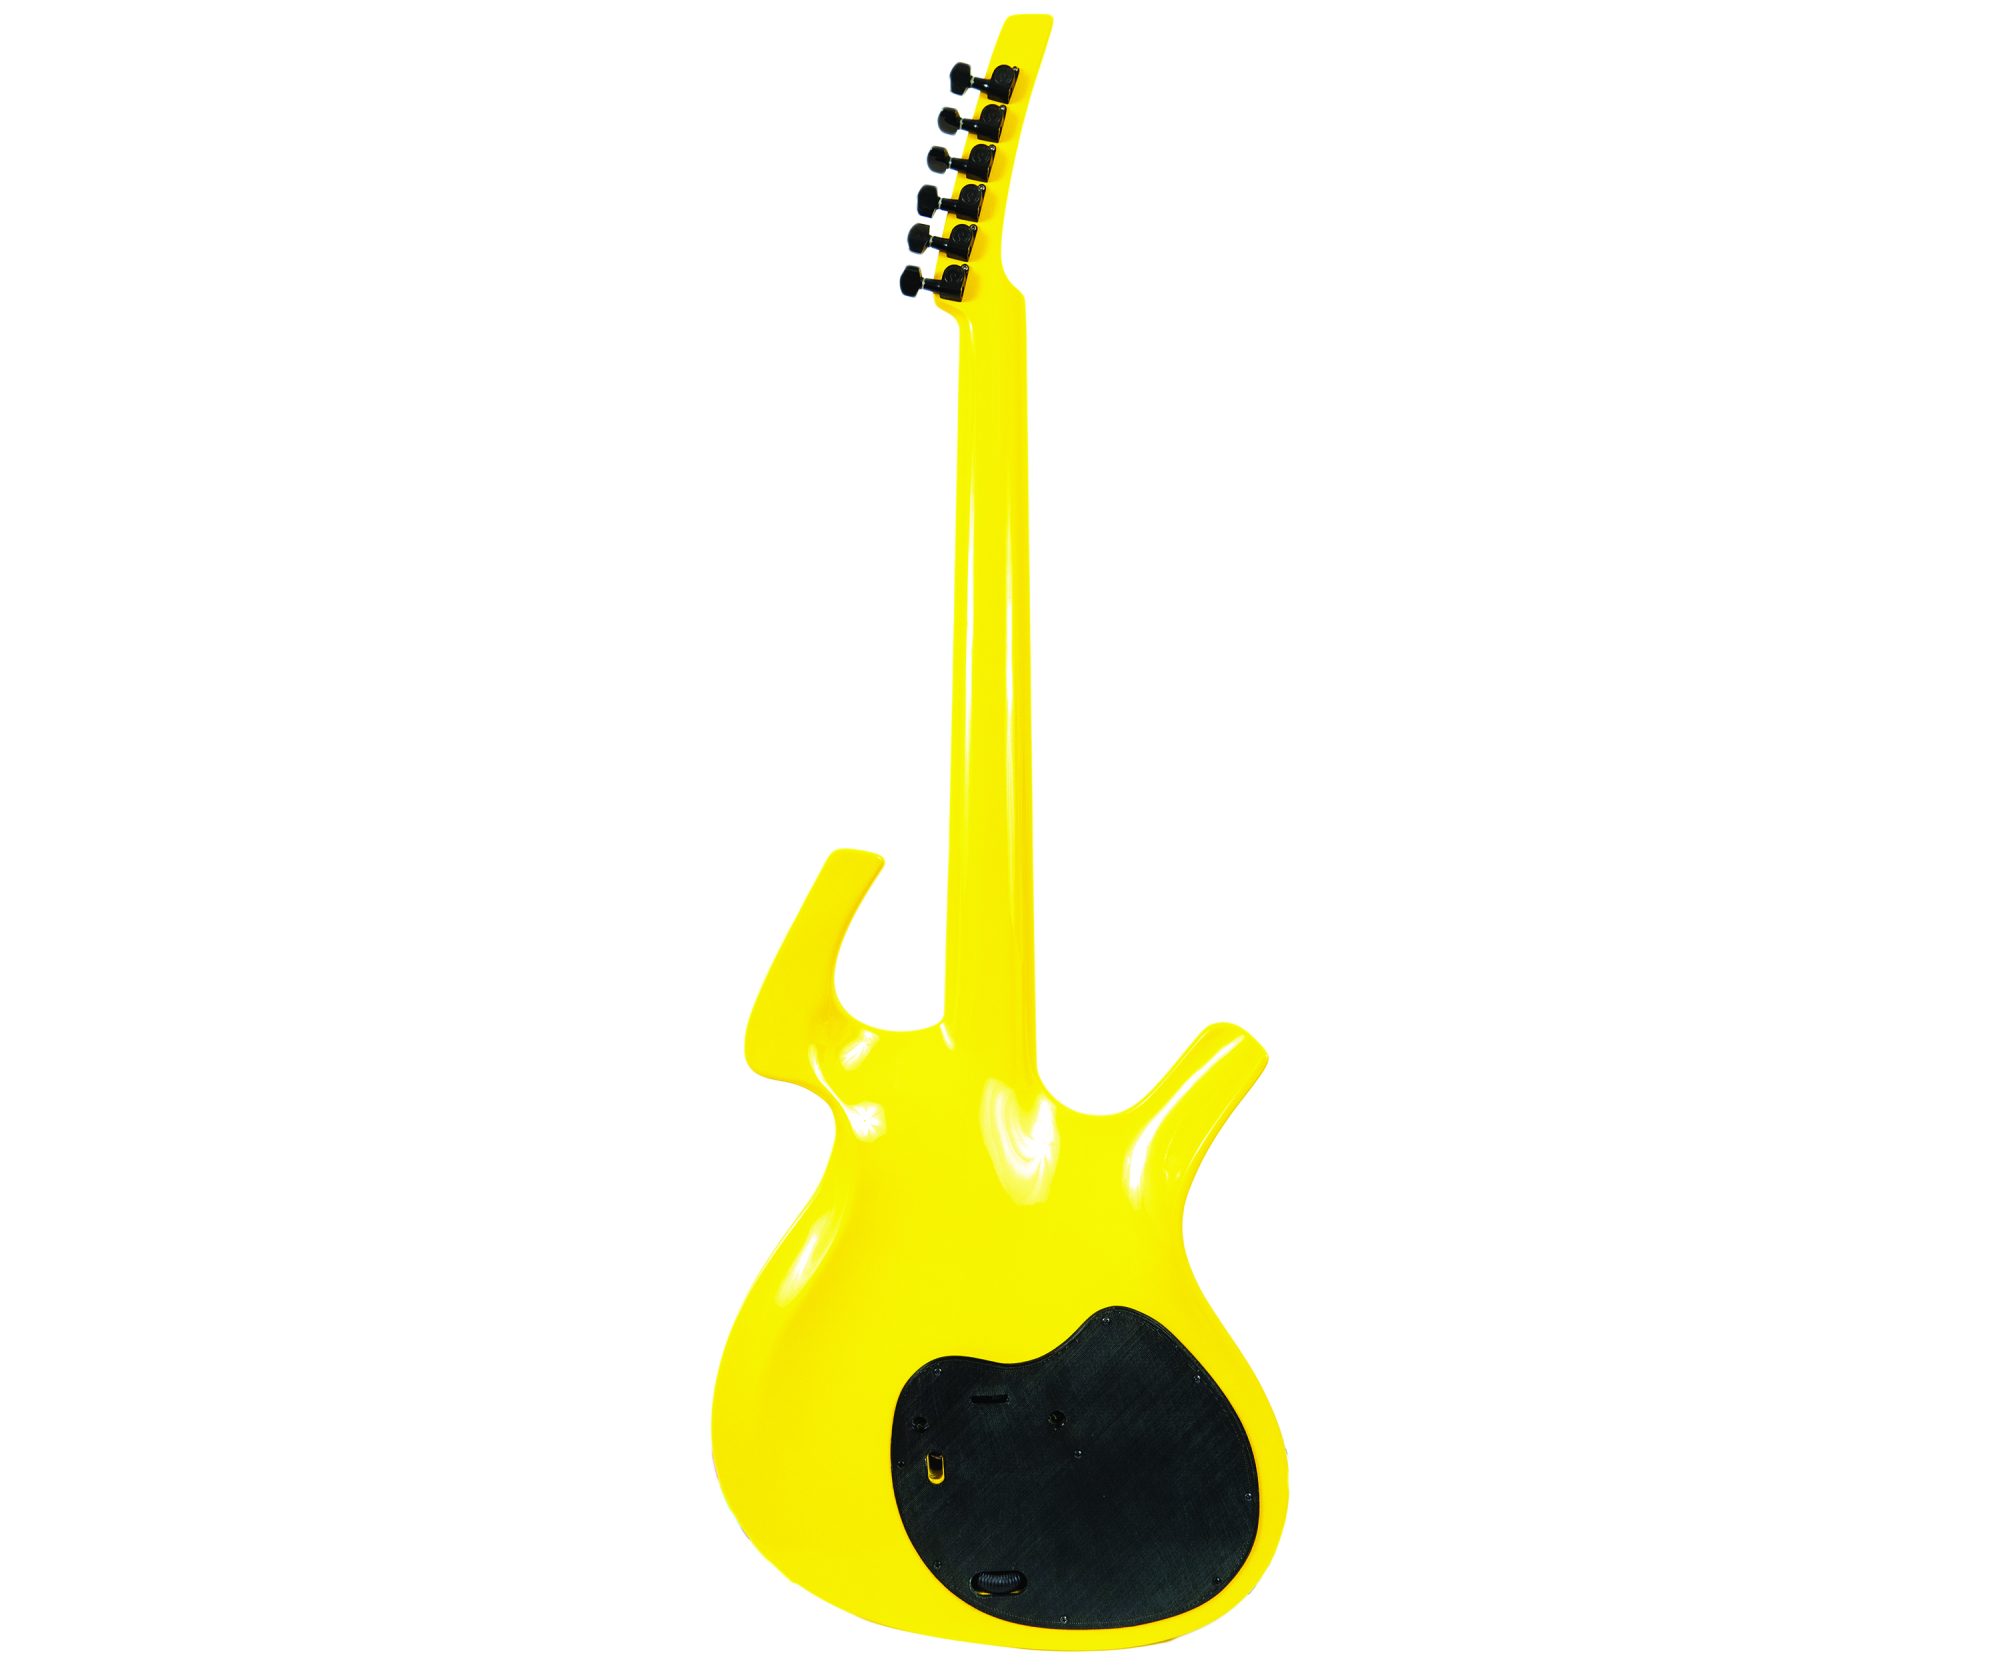 C - Parker guitar replica